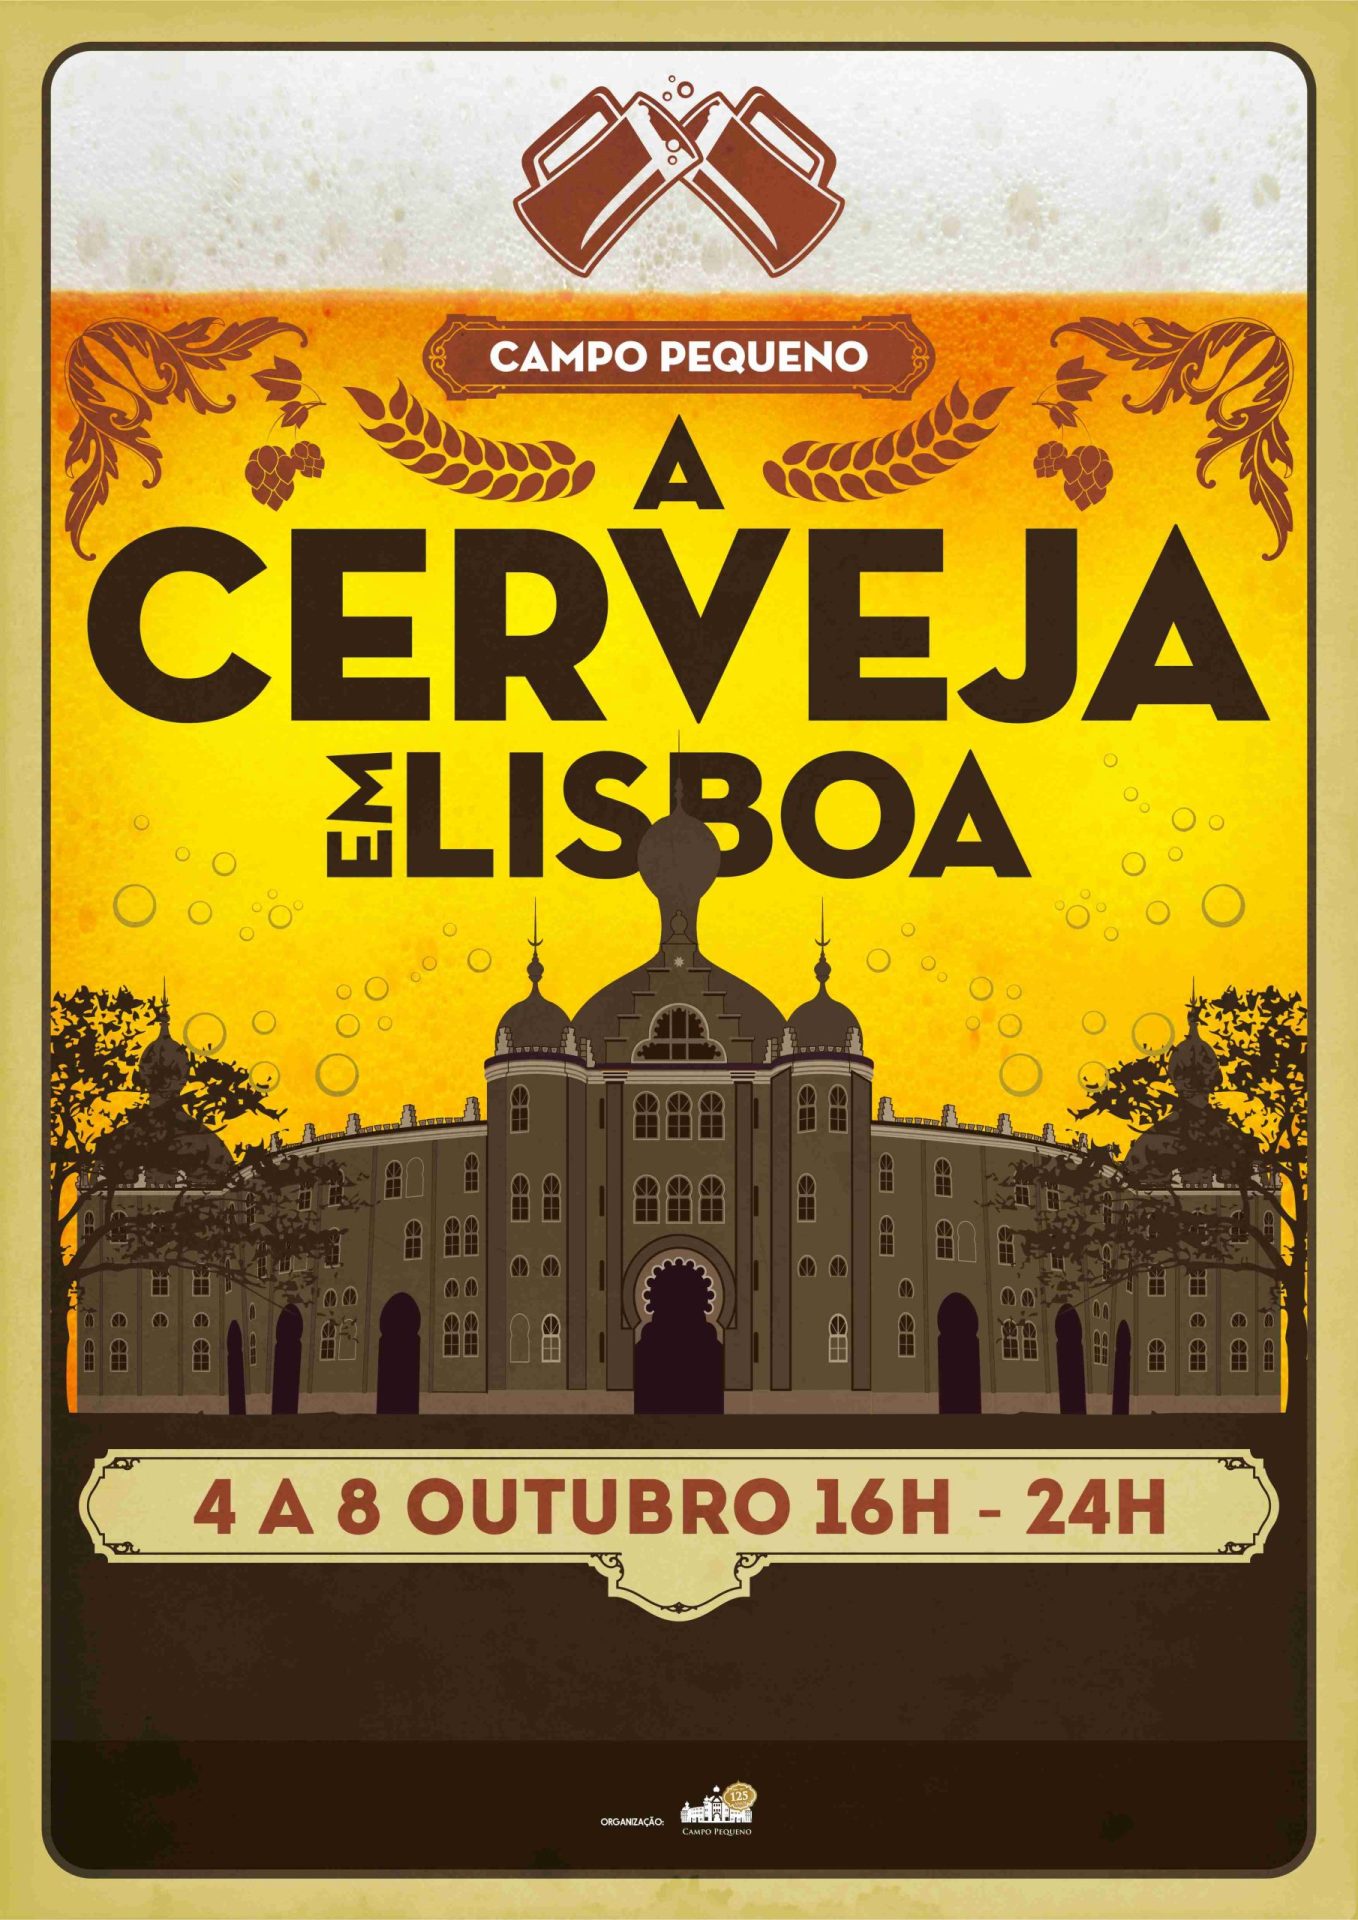 1ª Edição da Cerveja em Lisboa  no Campo Pequeno